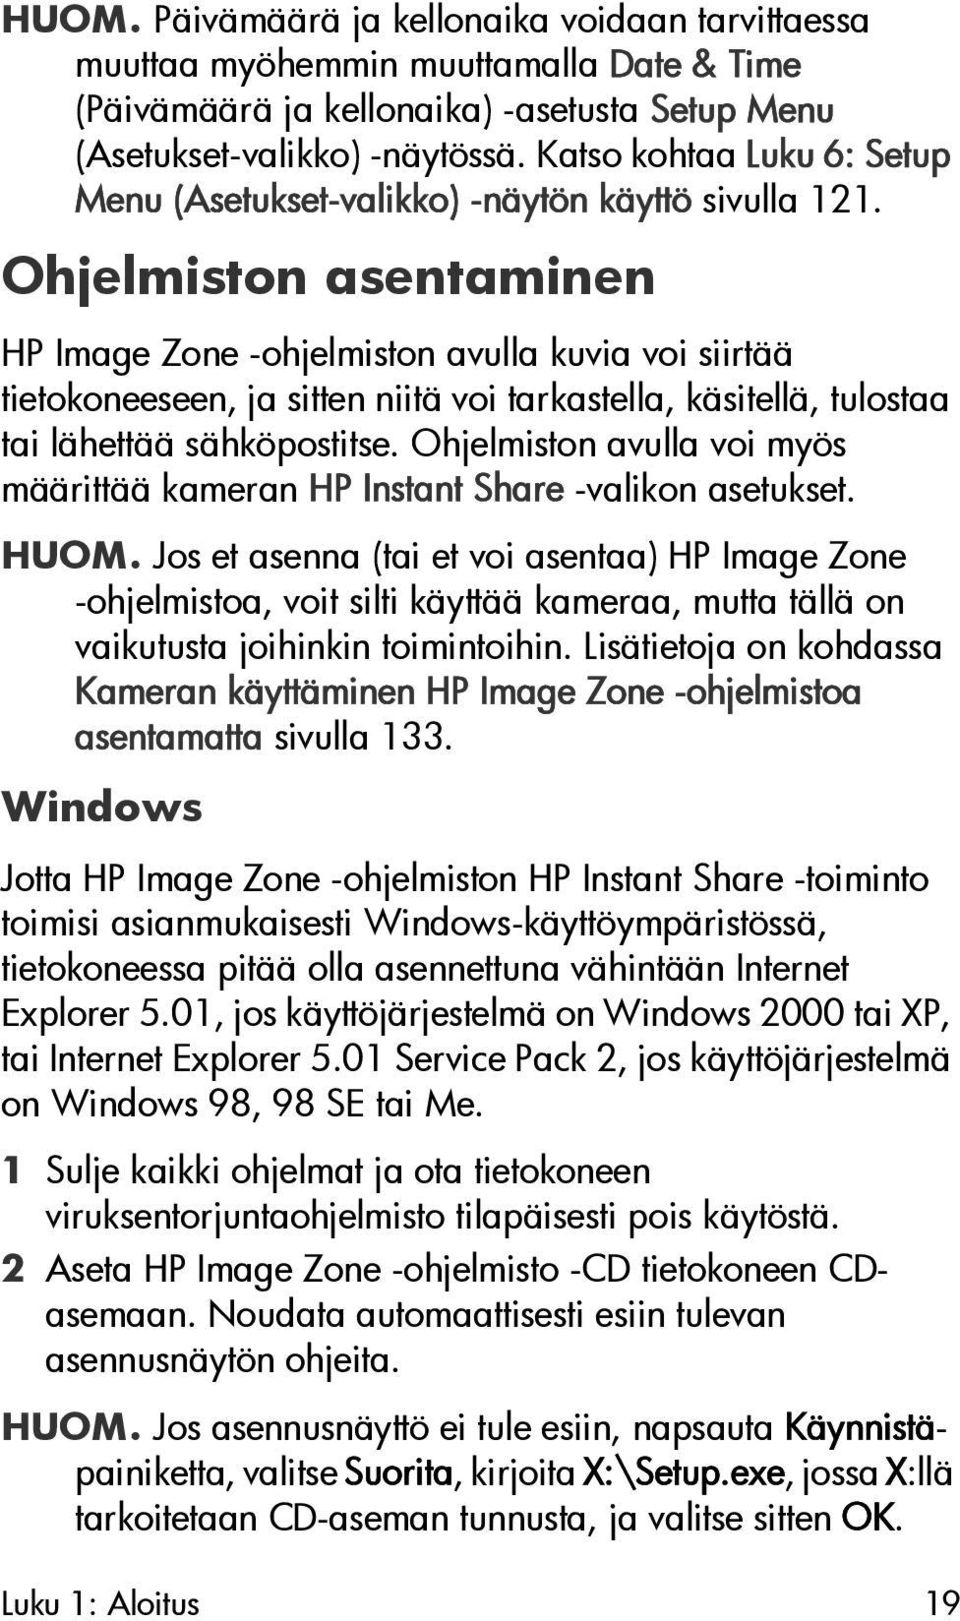 Ohjelmiston asentaminen HP Image Zone -ohjelmiston avulla kuvia voi siirtää tietokoneeseen, ja sitten niitä voi tarkastella, käsitellä, tulostaa tai lähettää sähköpostitse.